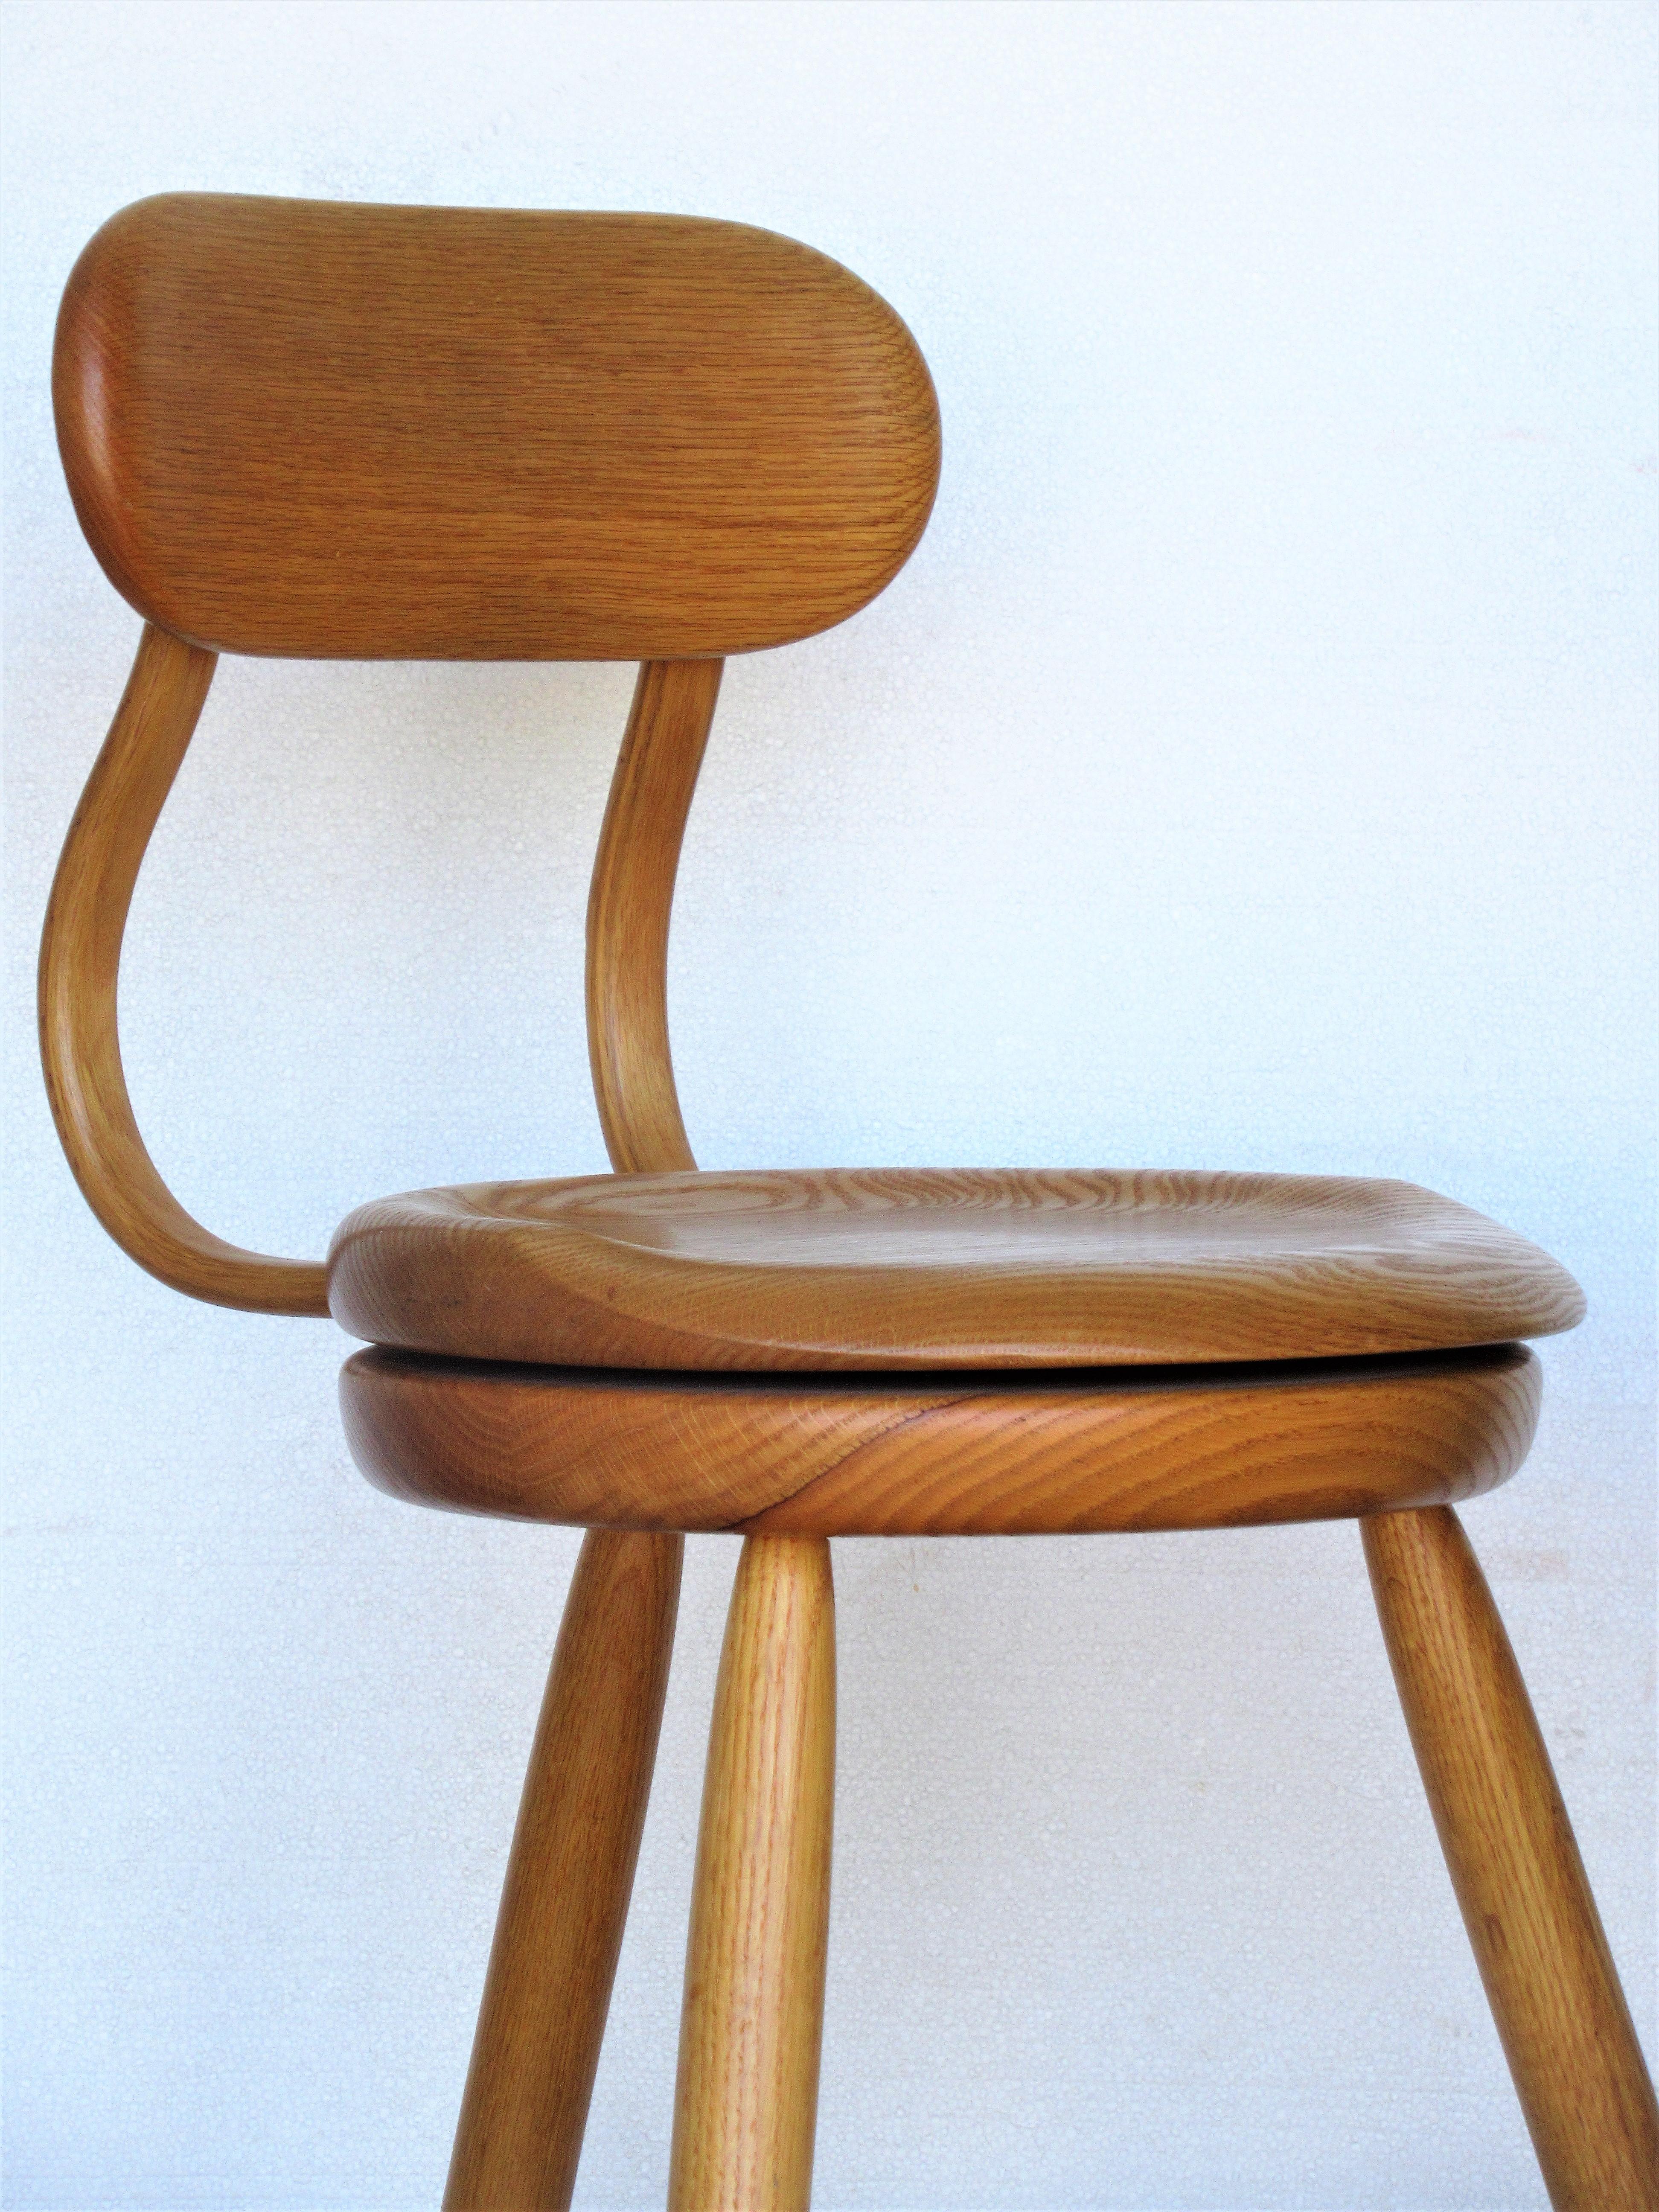 Drehhocker mit drehbarer Sitzfläche von Kai Pedersen Woodworking Studio, USA, 1980 (American Arts and Crafts) im Angebot